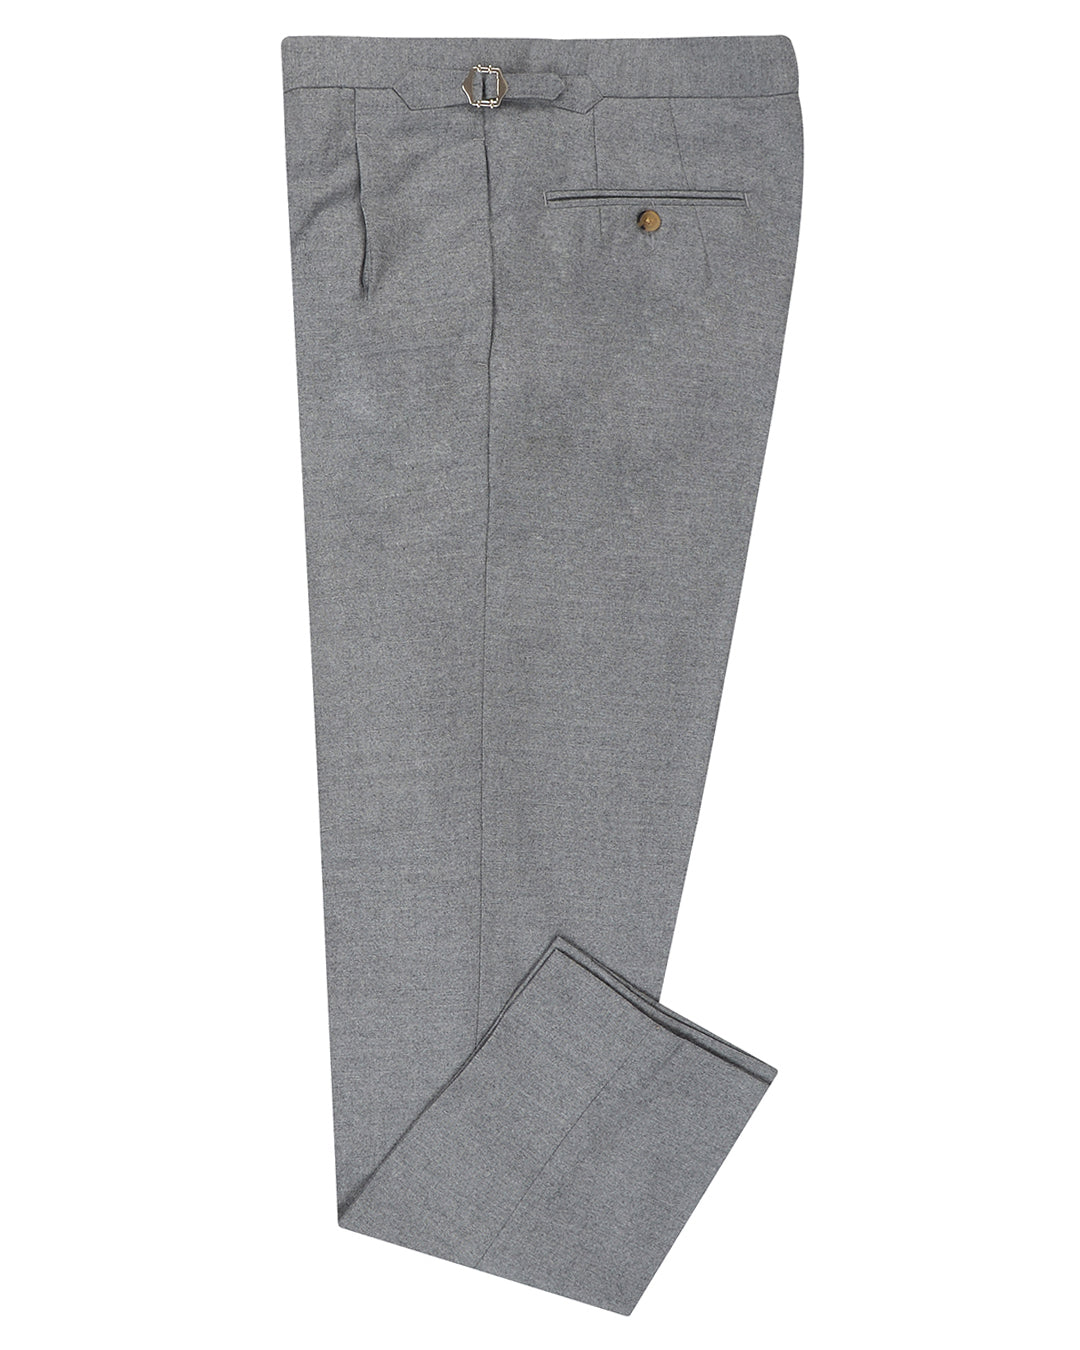 VBC 100% Wool: Grey Flannel